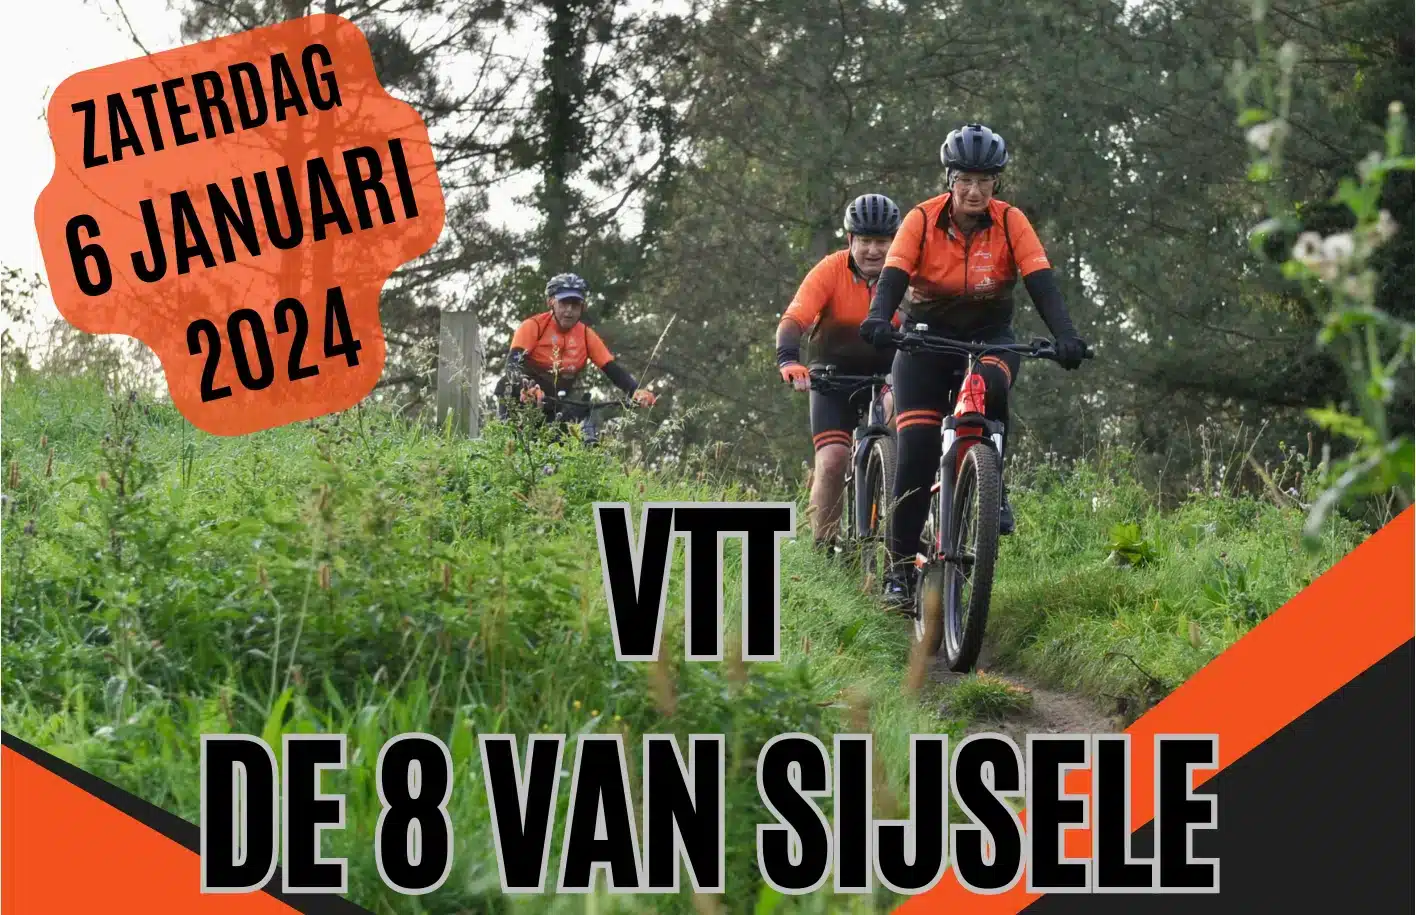 VTT the 8 of Sijsele banner